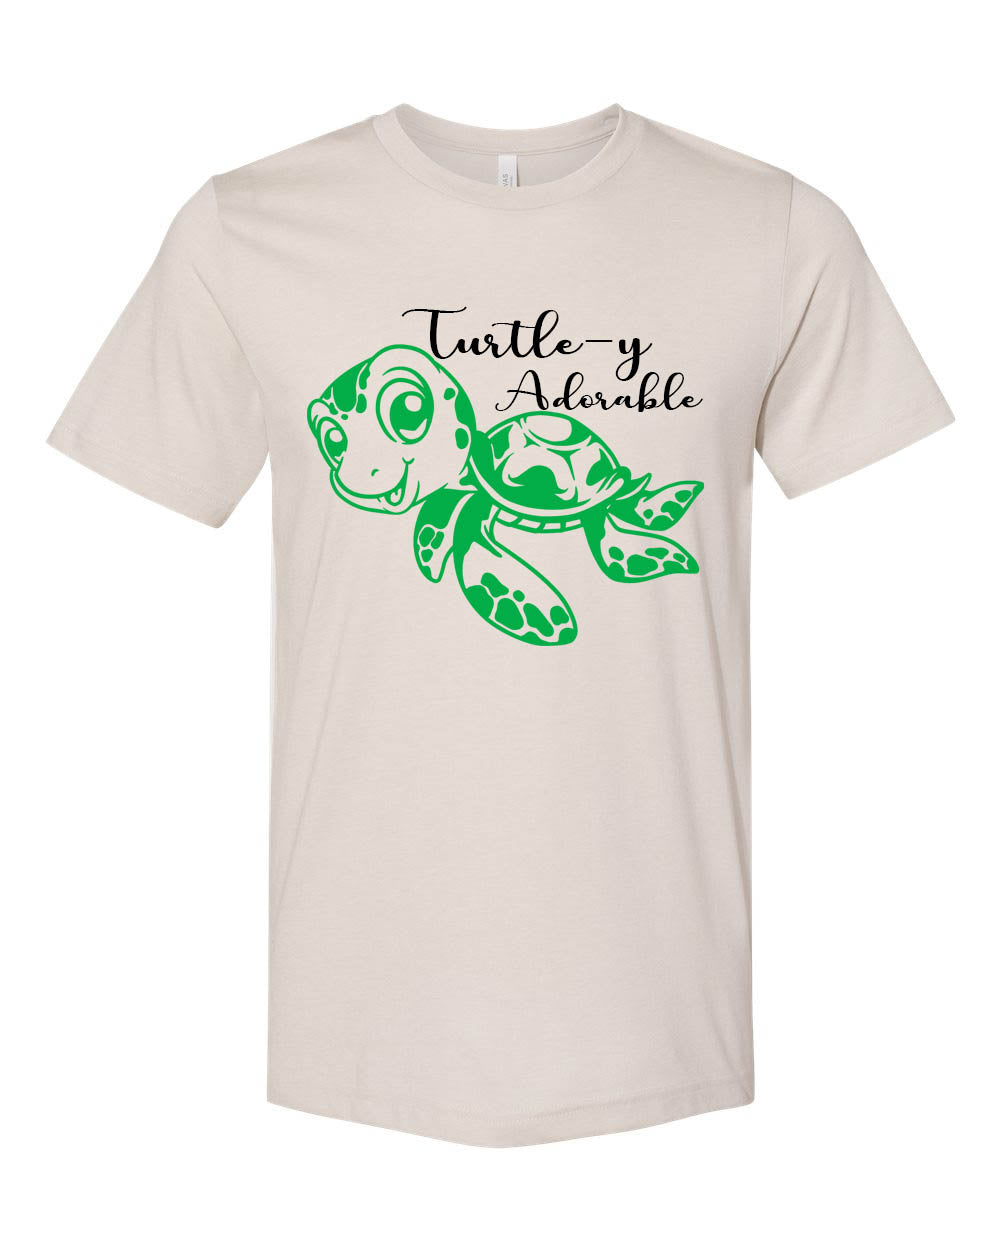 Turtle-y Adorable Shirt